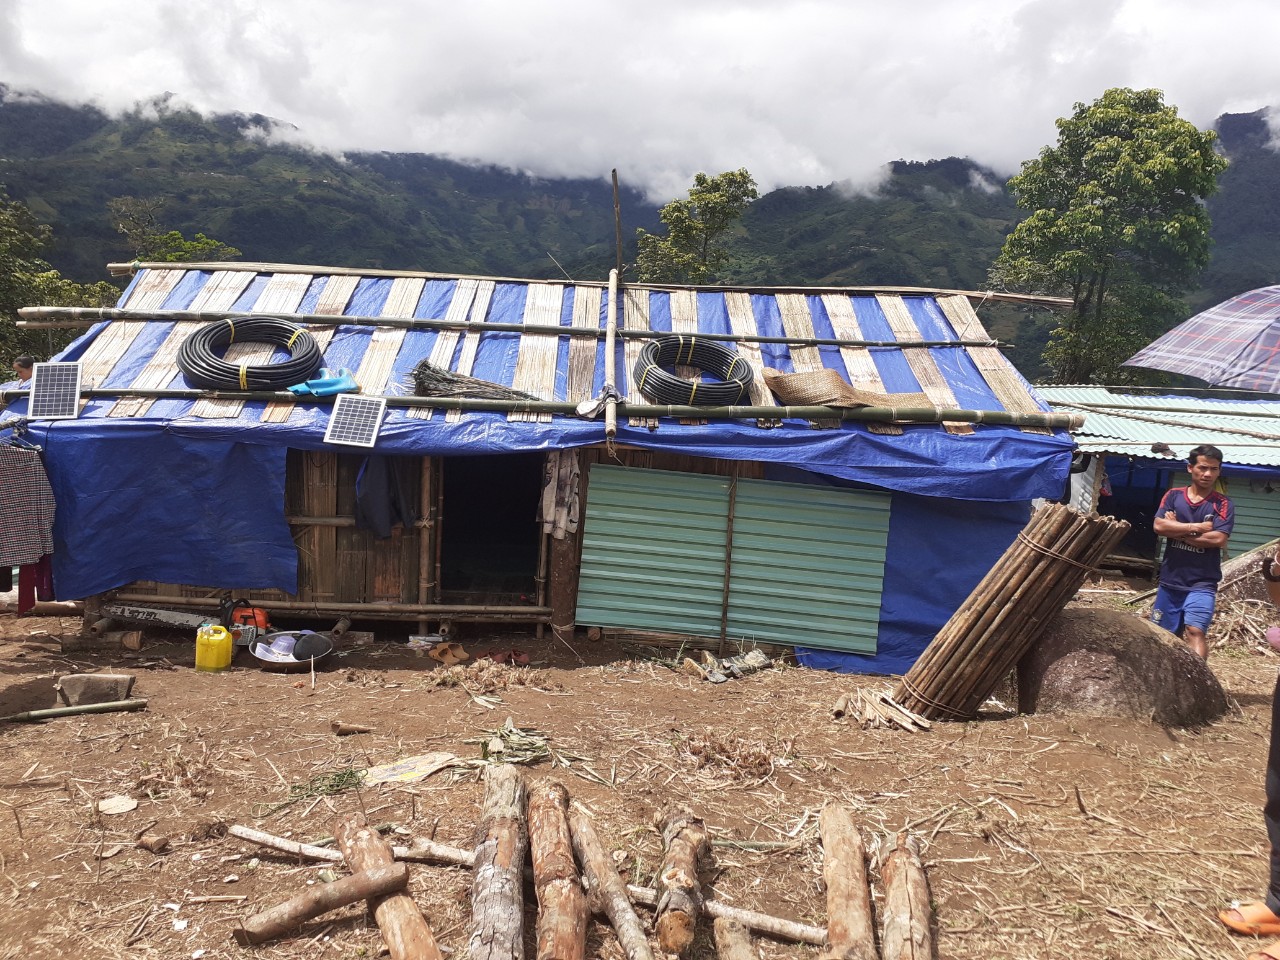 UBND xã Trà Linh đã di dời người dân trong vùng nguy hiểm ra dựng lều tạm để tránh trú qua đợt mưa bão này